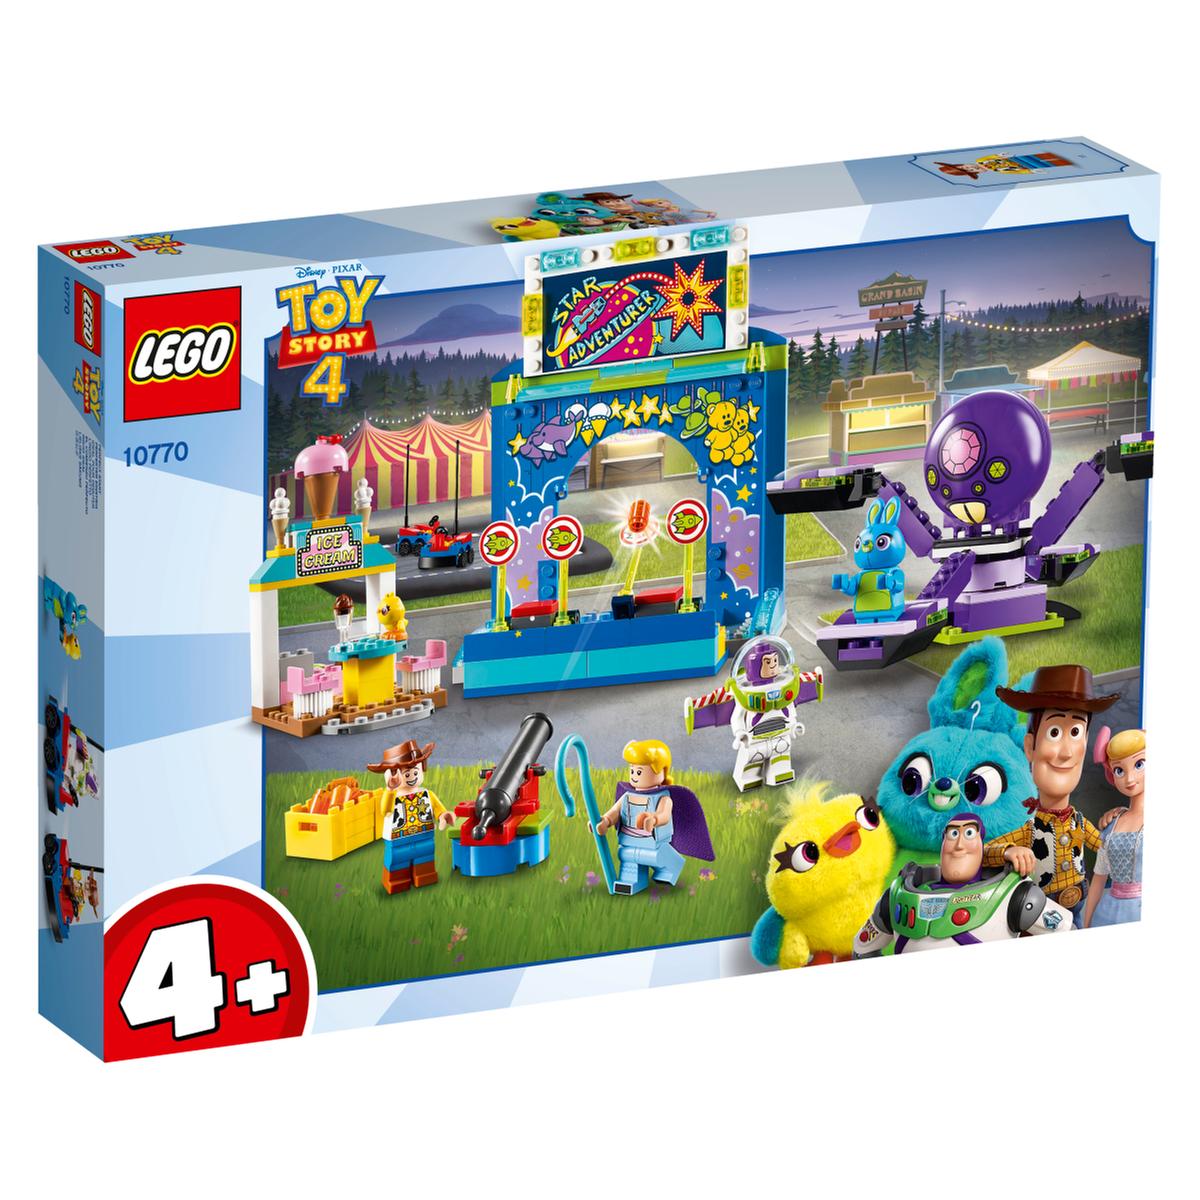 LEGO Toy Story - Buzz y Woody Locos por la Feria - 10770 | Duplo Junior |  Toys"R"Us España